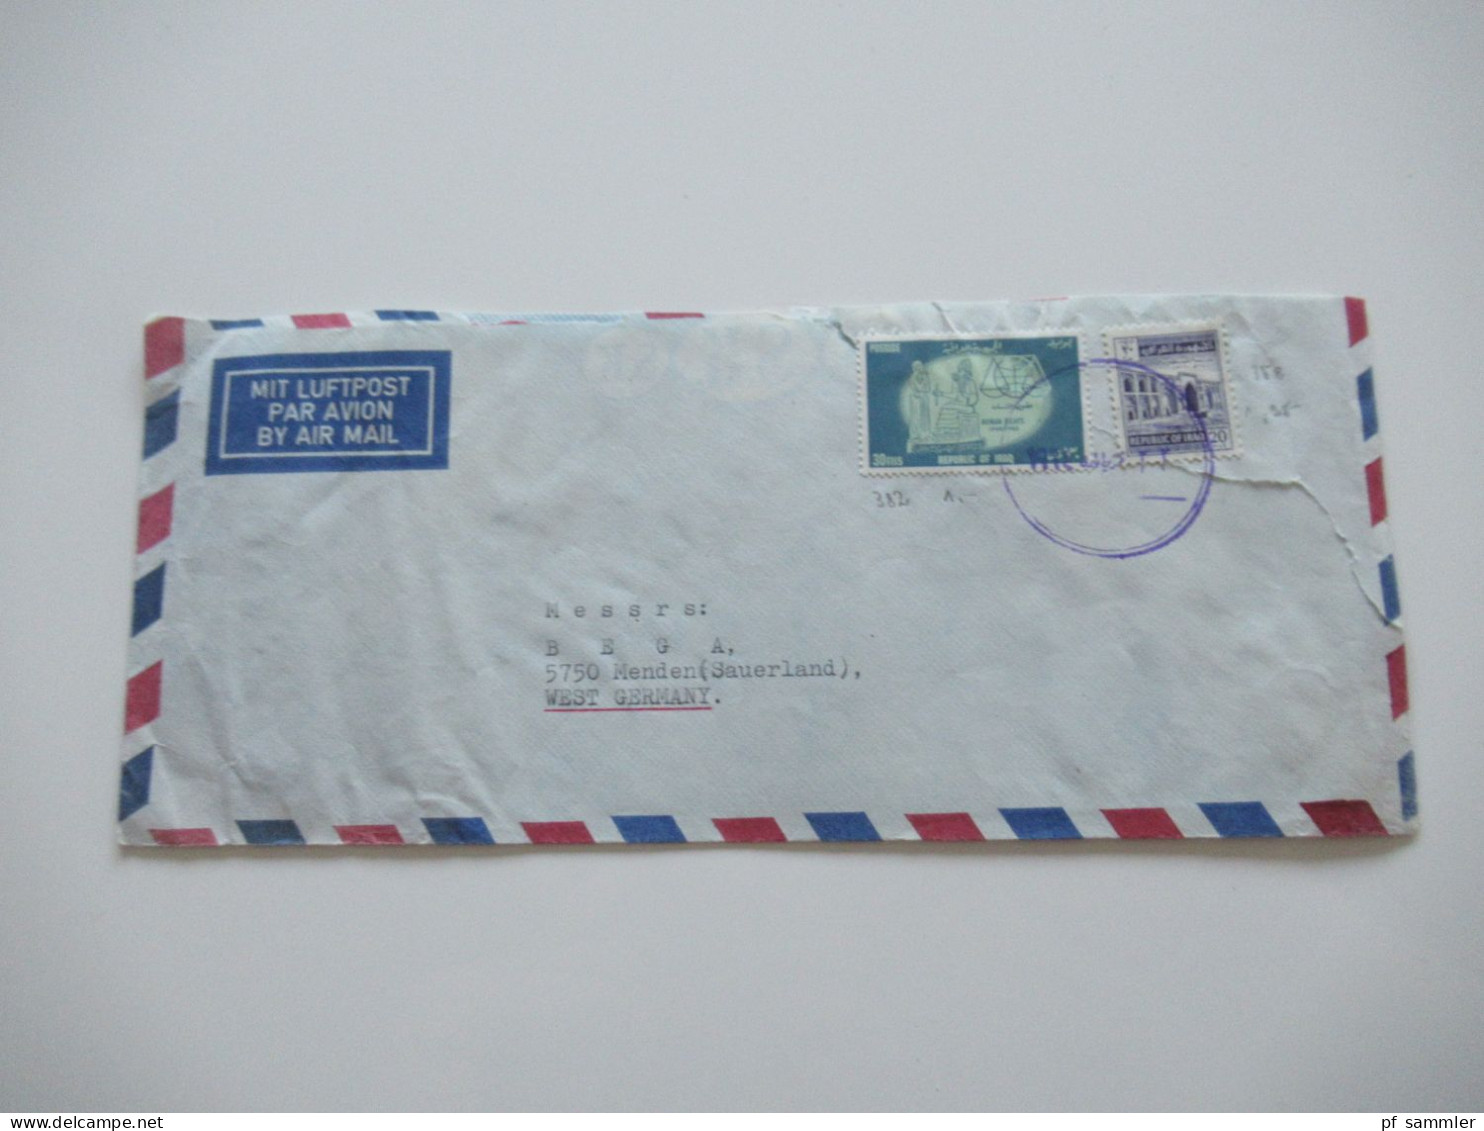 Asien Irak Um 1963 Air Mail Luftpost Violetter Stempel Und Rückseitig Violetter Dreieckstempel Auslandsbrief - Iran